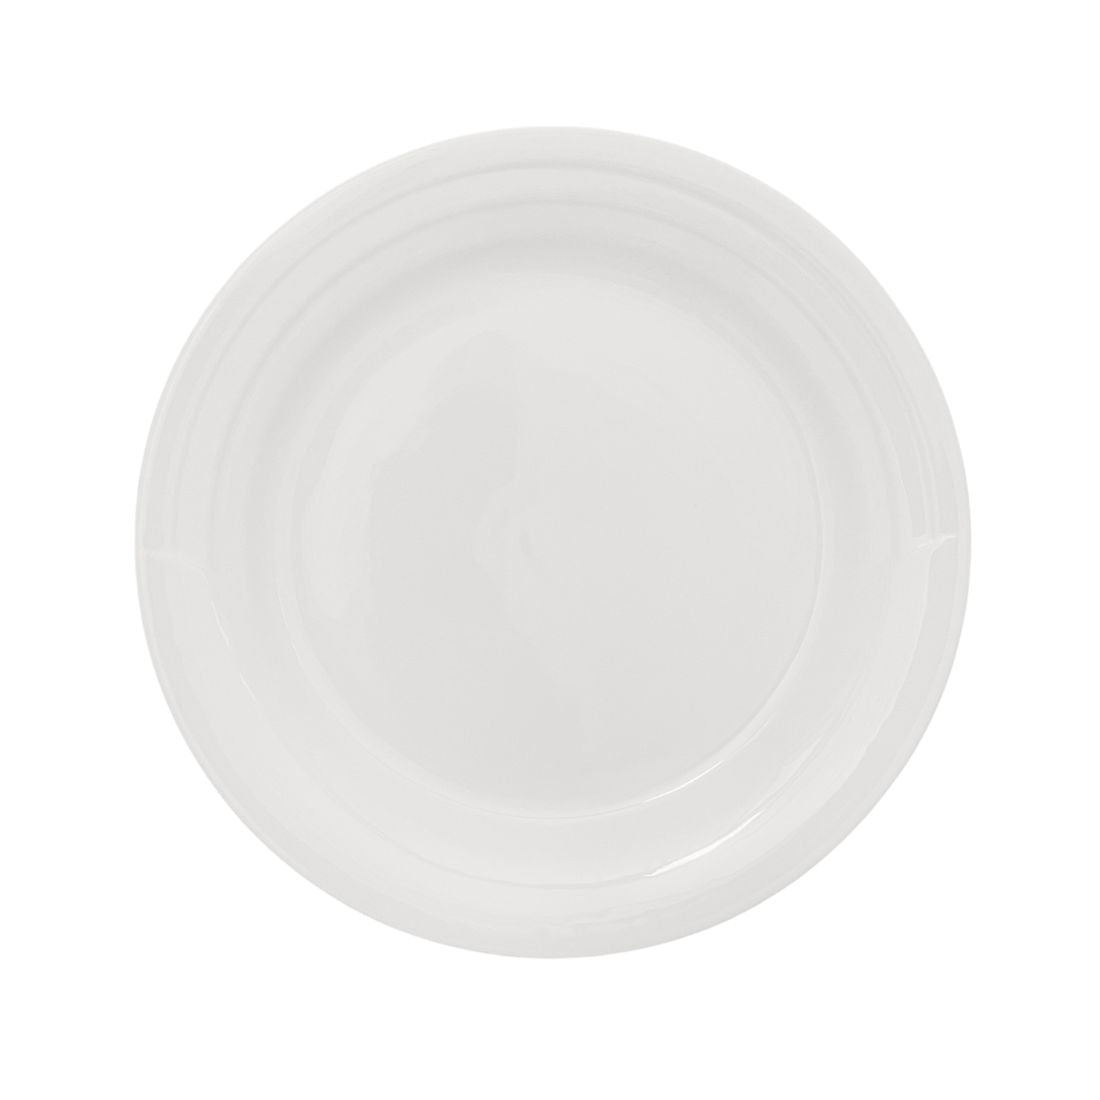 Large White Ceramic Serving Platter